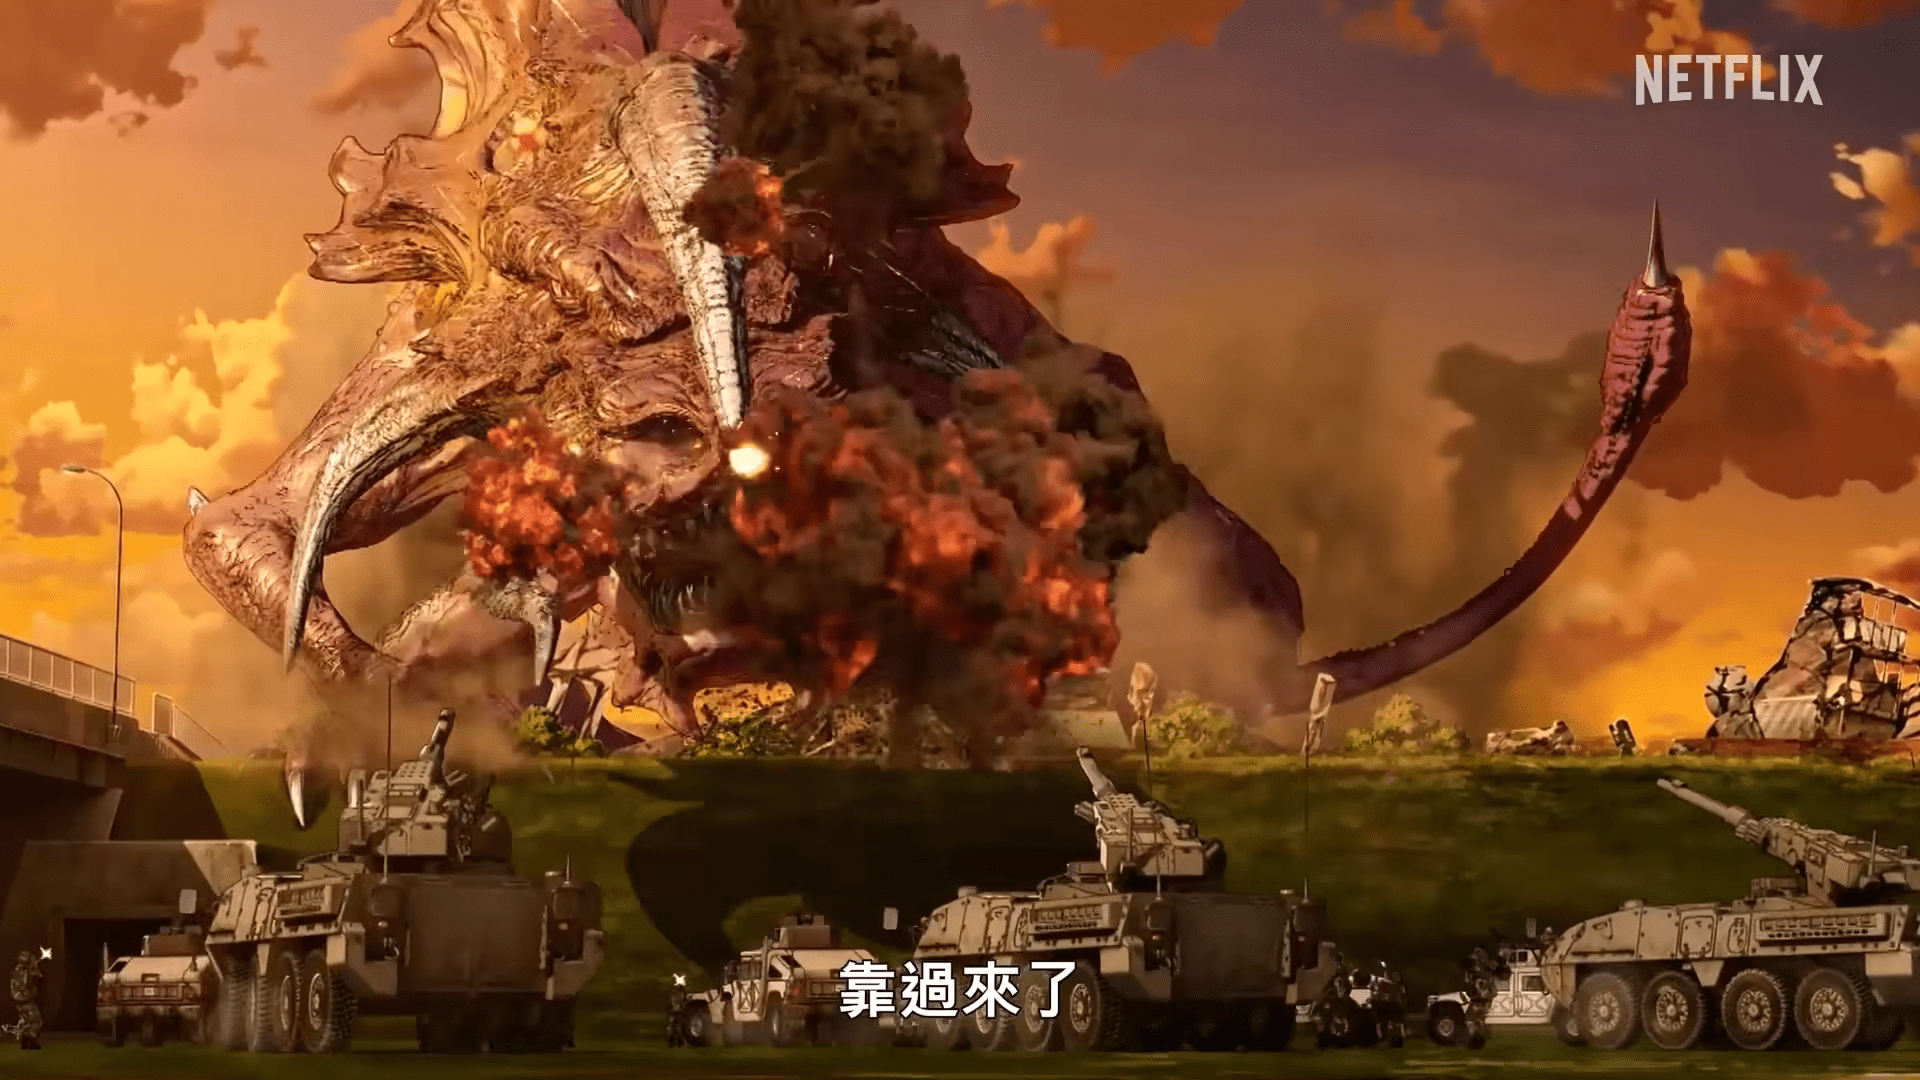 网飞动画《大怪兽卡美拉 重生》正式预告公开